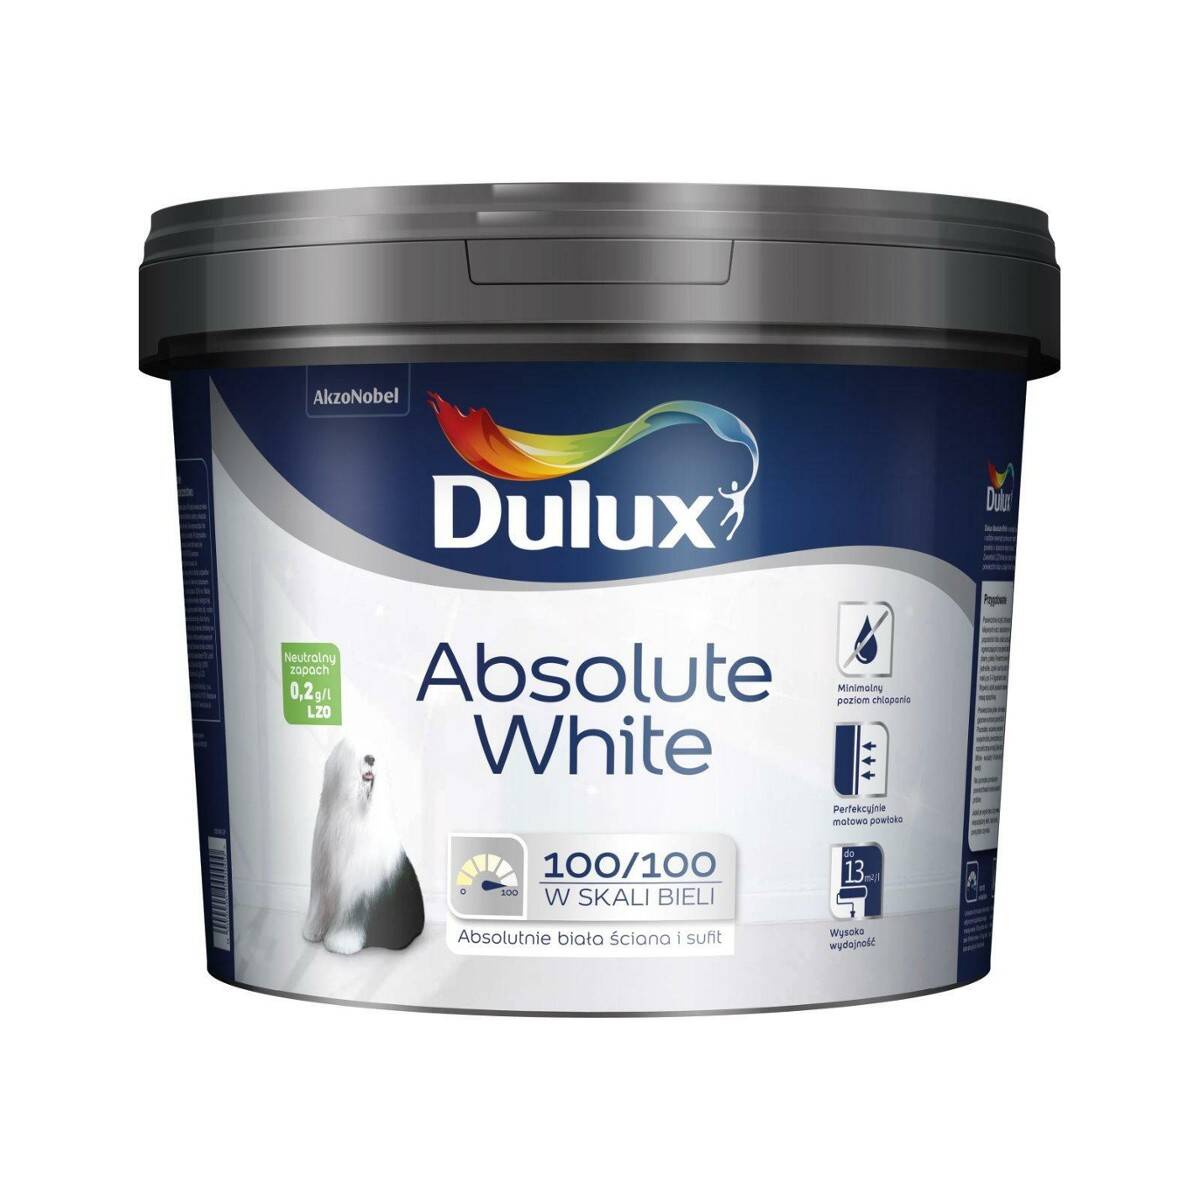 Dulux Absolute White biała farba emulsyjna do ścian i sufitów 9l (Zdjęcie 1)